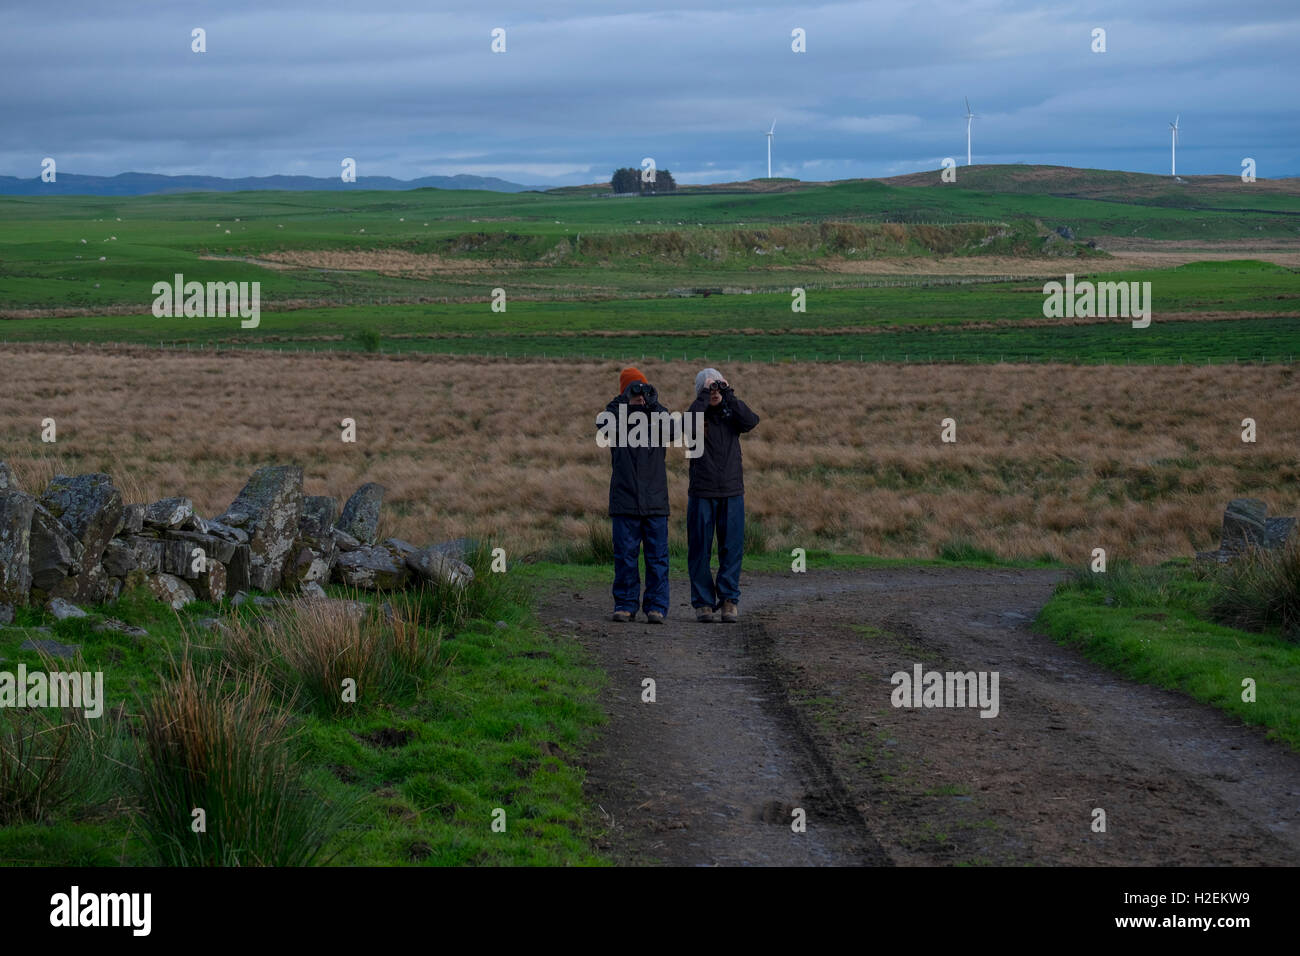 Birdwatching on the island of Luing, Argyle, Western Scotland, UK Stock Photo